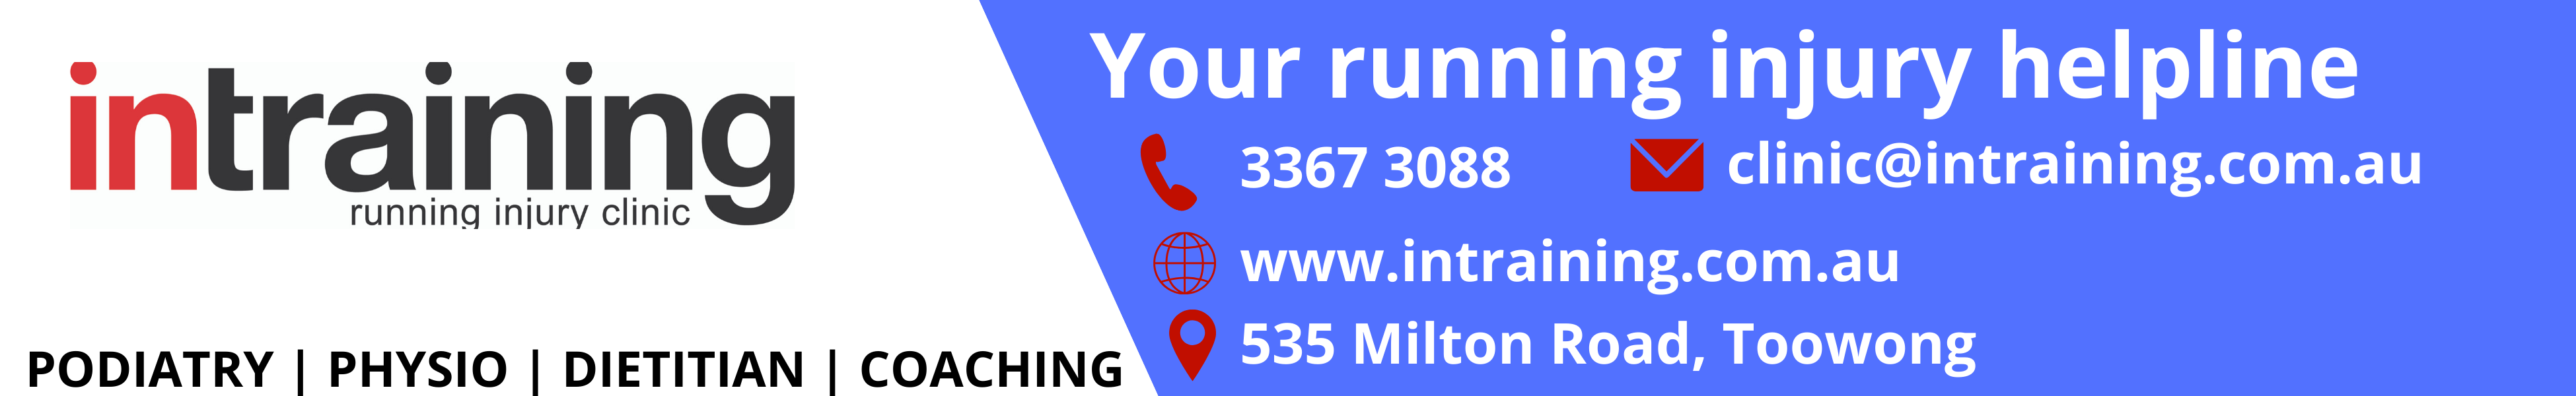 Your running injury helpline 11